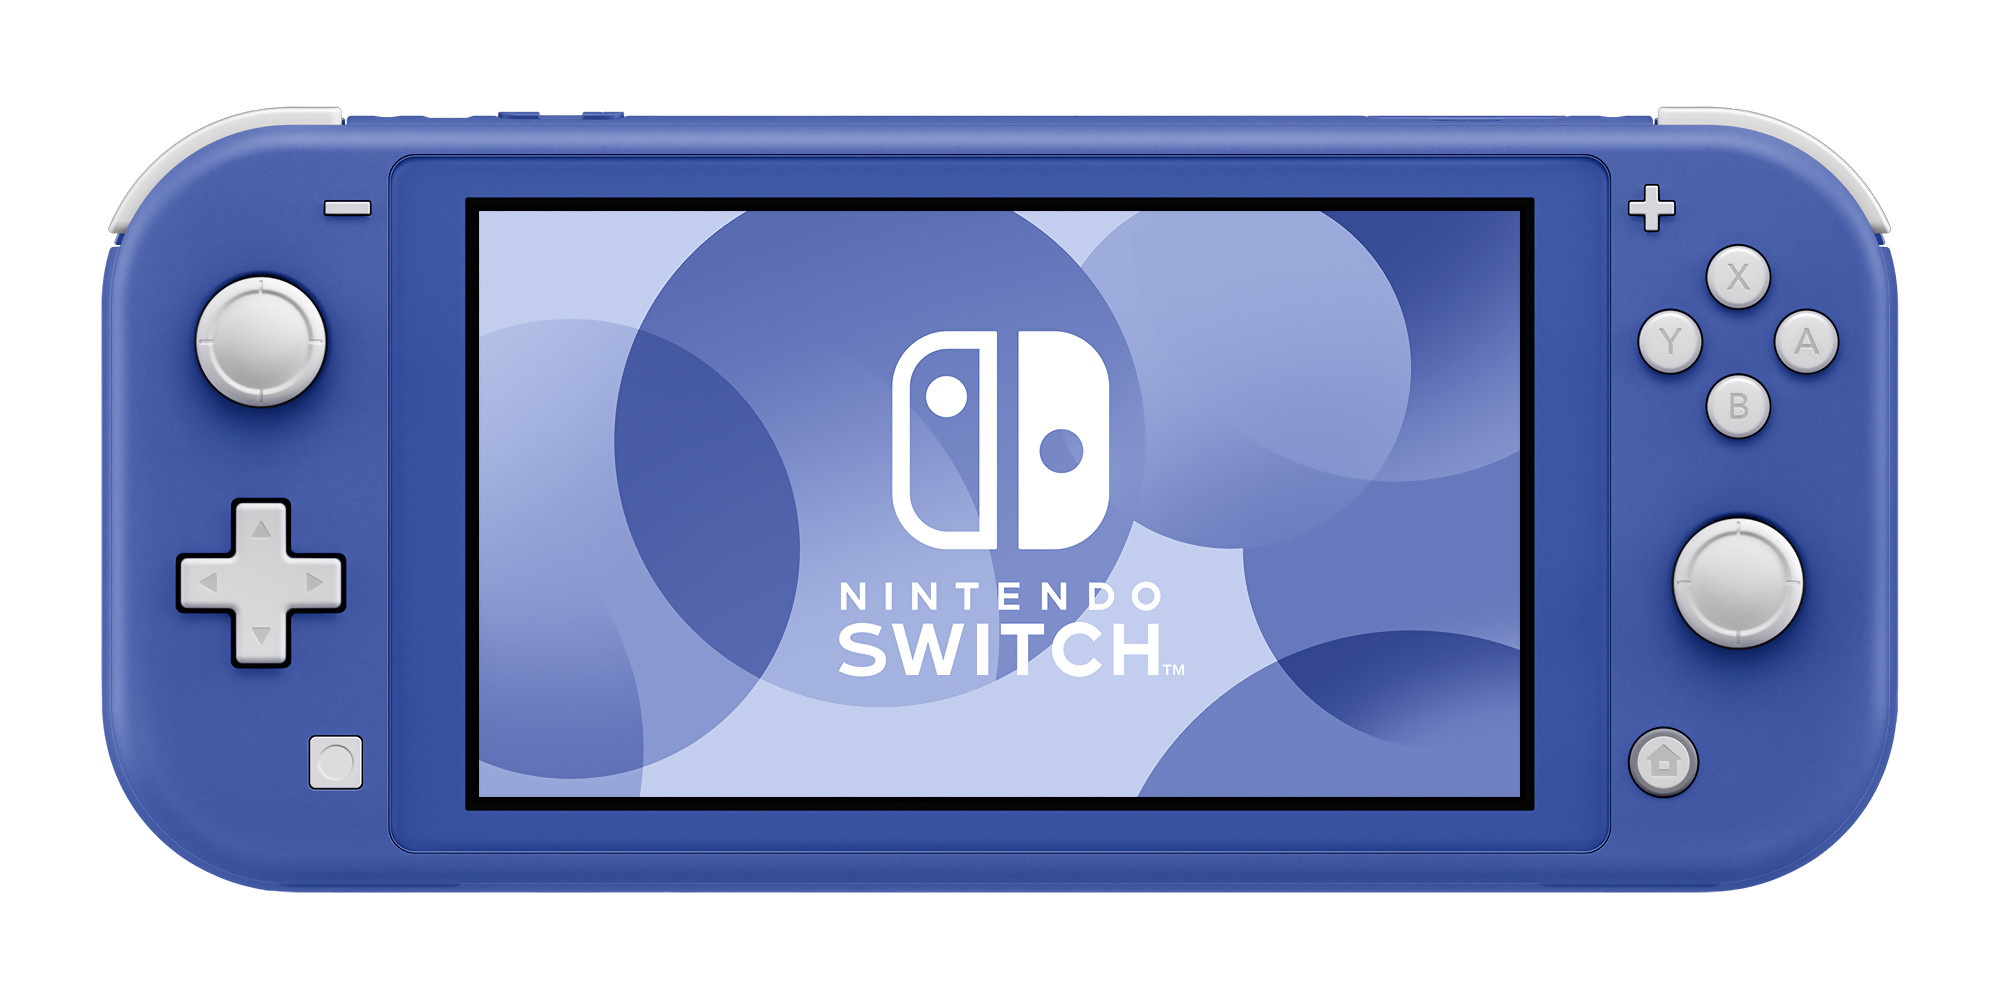 Nintendo Switch Lite Bientot Un Nouveau Coloris Pour La Console